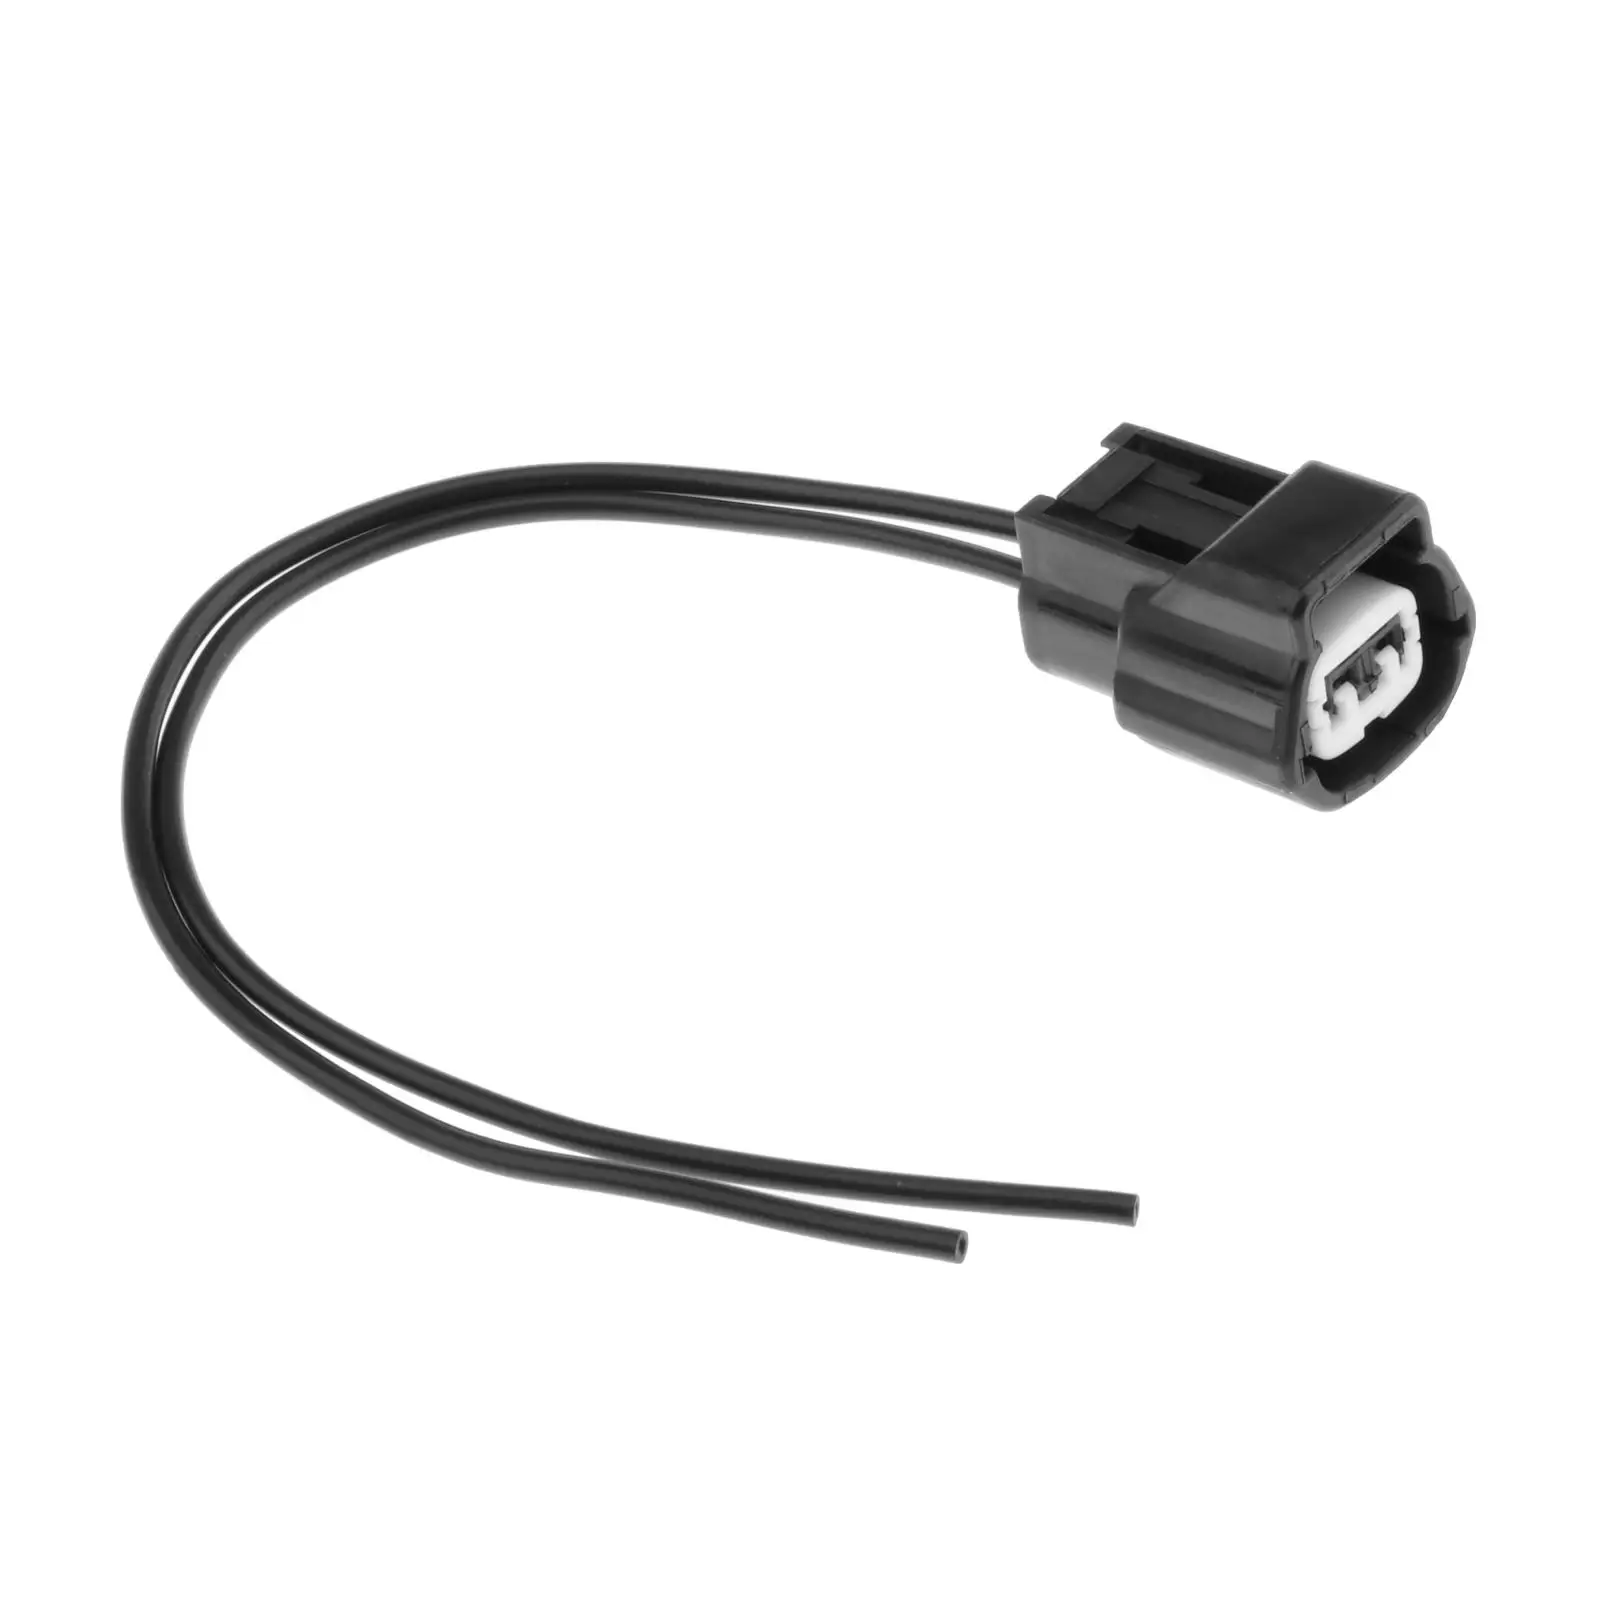 

1x NEW Replacements Crankshaft Position Sensor Connector Plug Pigtail for Nissan D21 Pickup Frontier Urvan Xterra